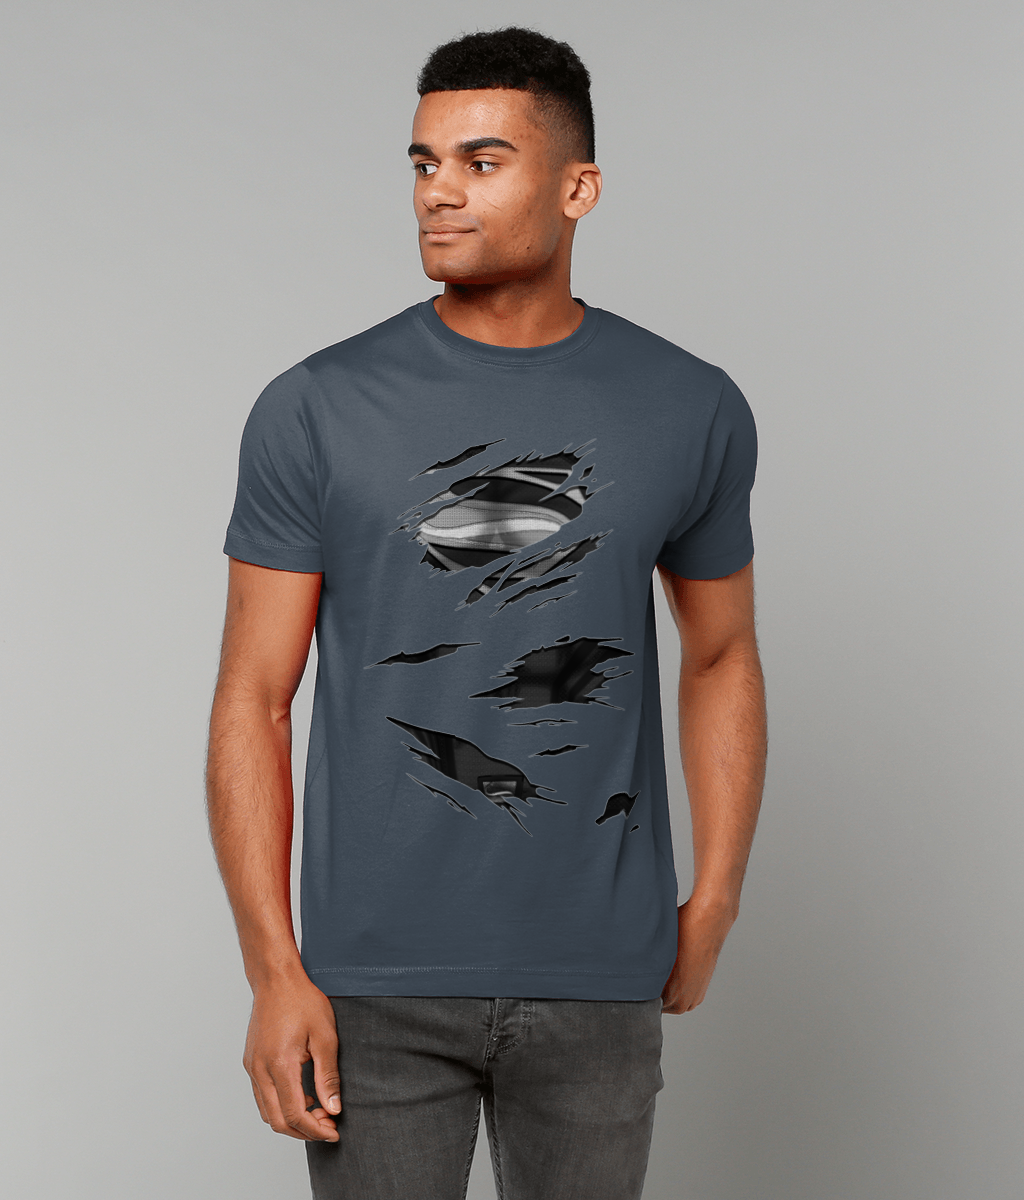 Black Suit Superman Torn T-Shirt